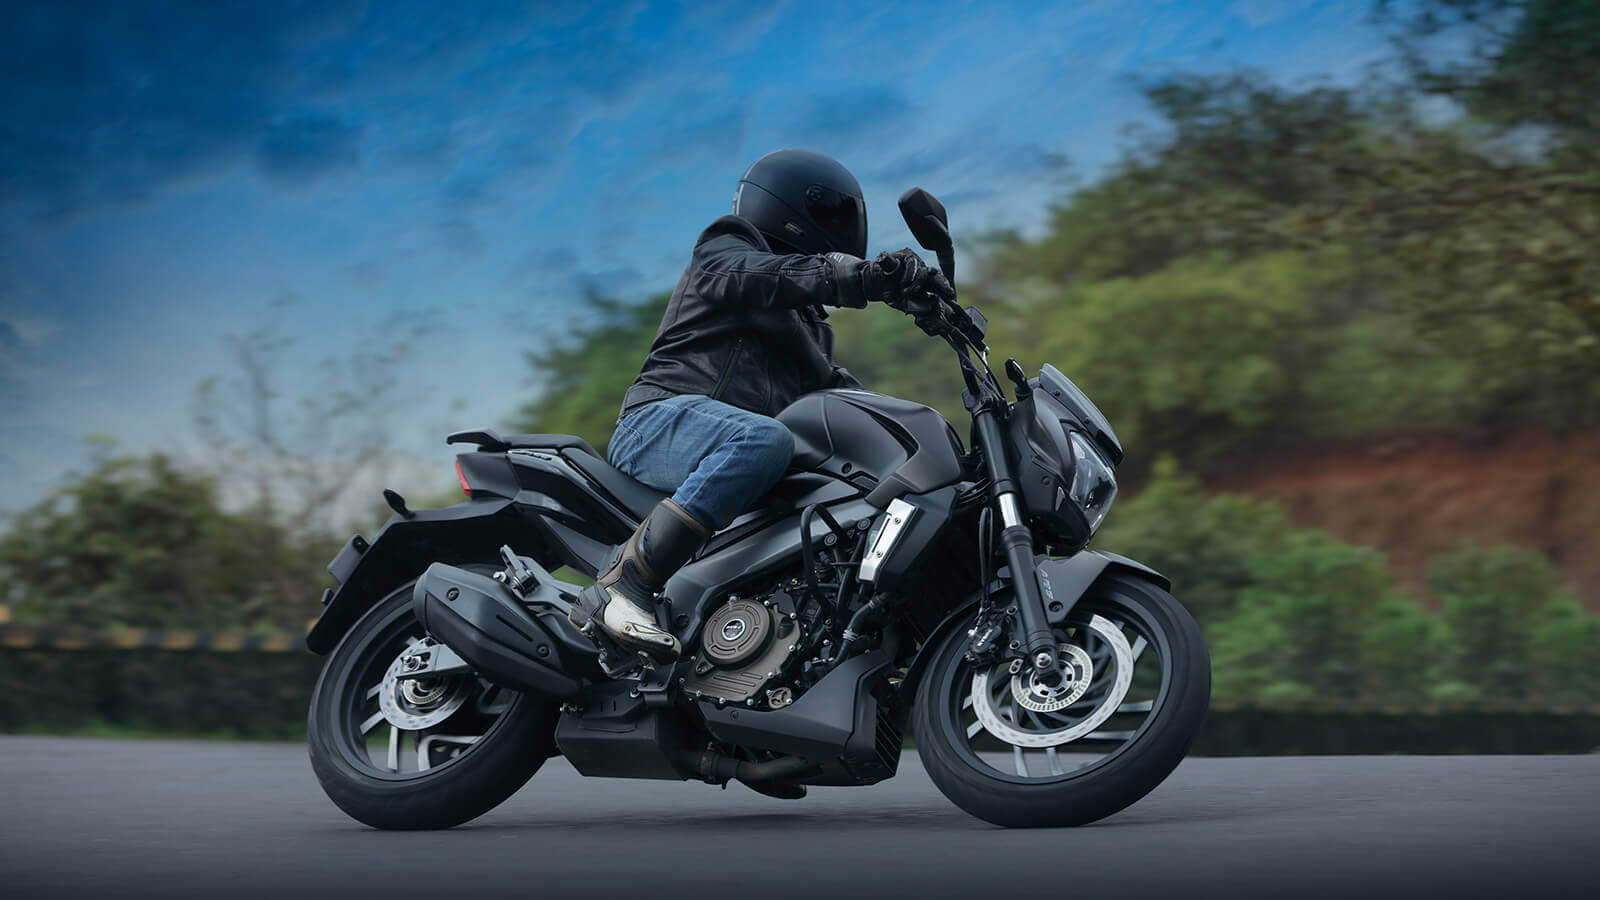 Bajaj Dominar 400 एक 'टूरिंग-ओरिएंटेड' मोटरसायकल आहे. या बाइकवर रायडरला 'कम्फर्ट' आणि 'कमांडिंग' रायडिंग पोझिशन मिळते.